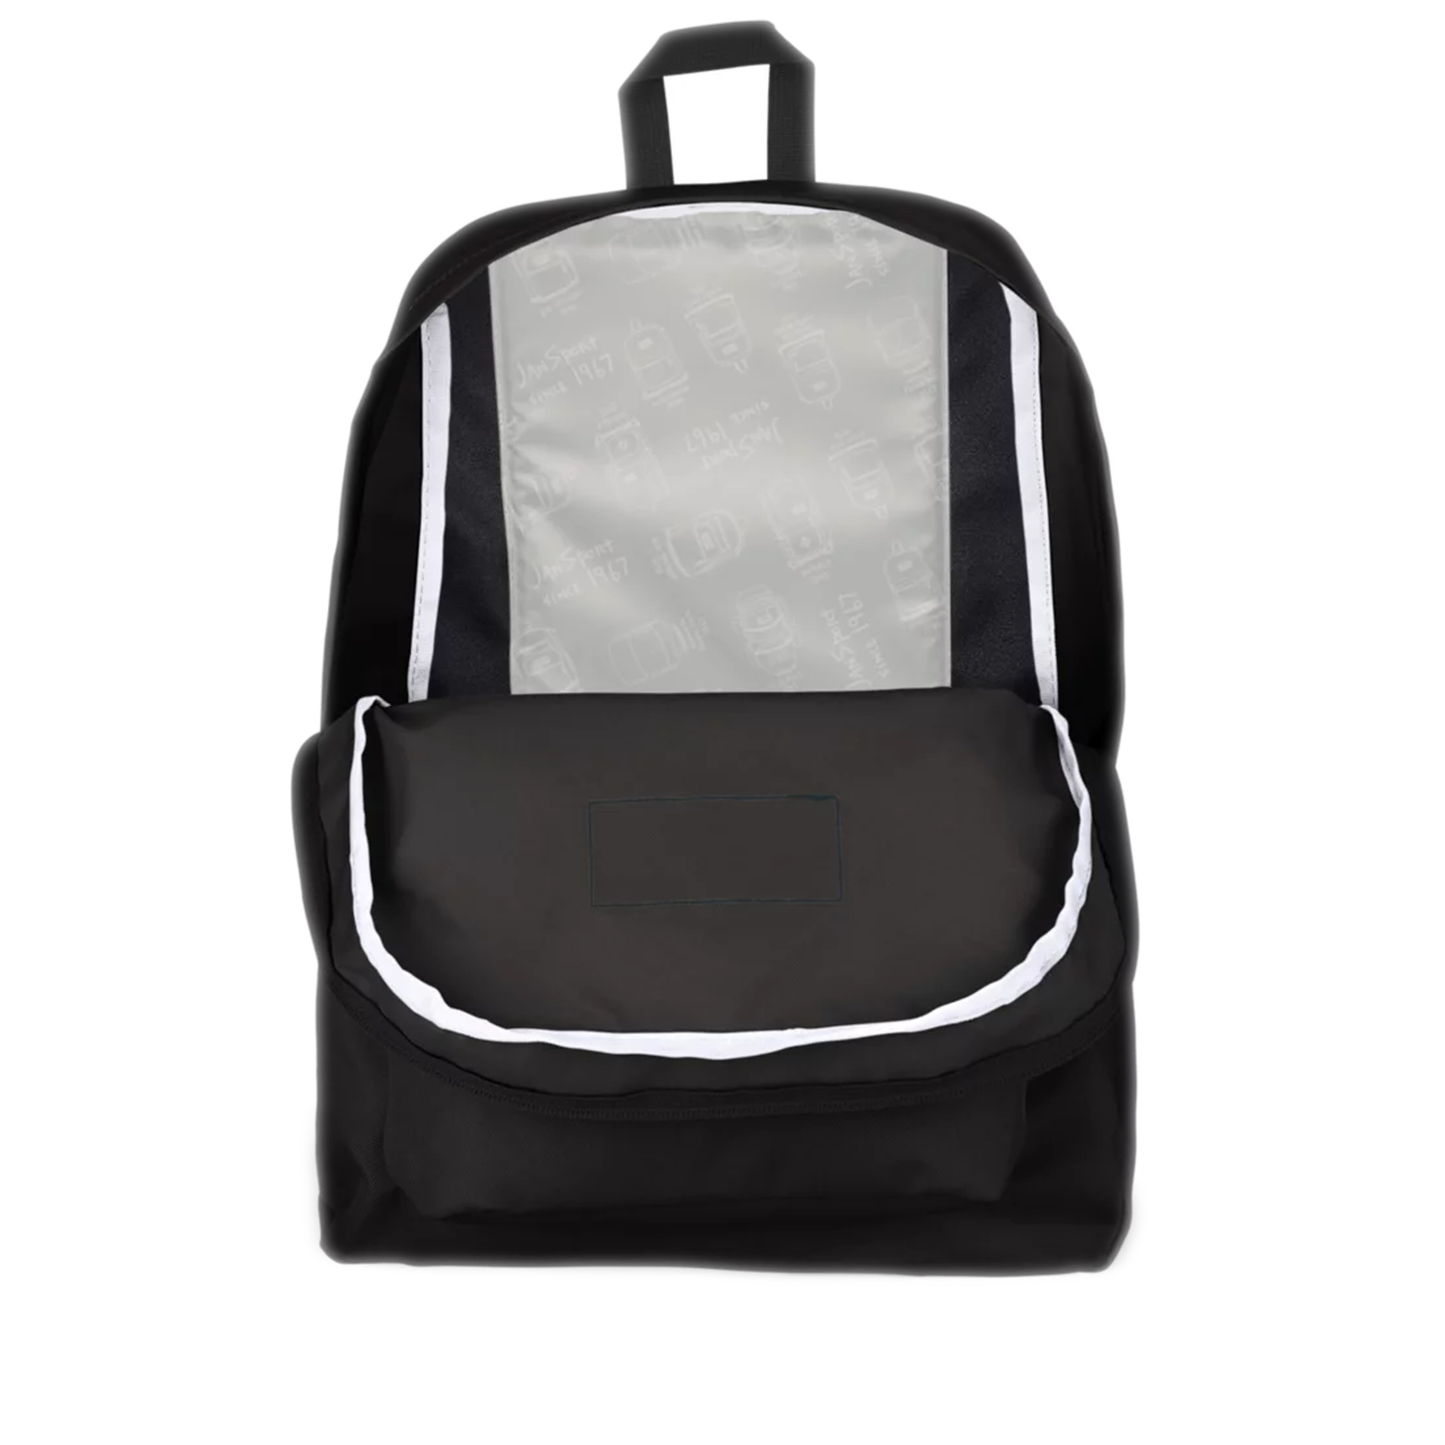 JanSport SuperBreak Backpack - Black